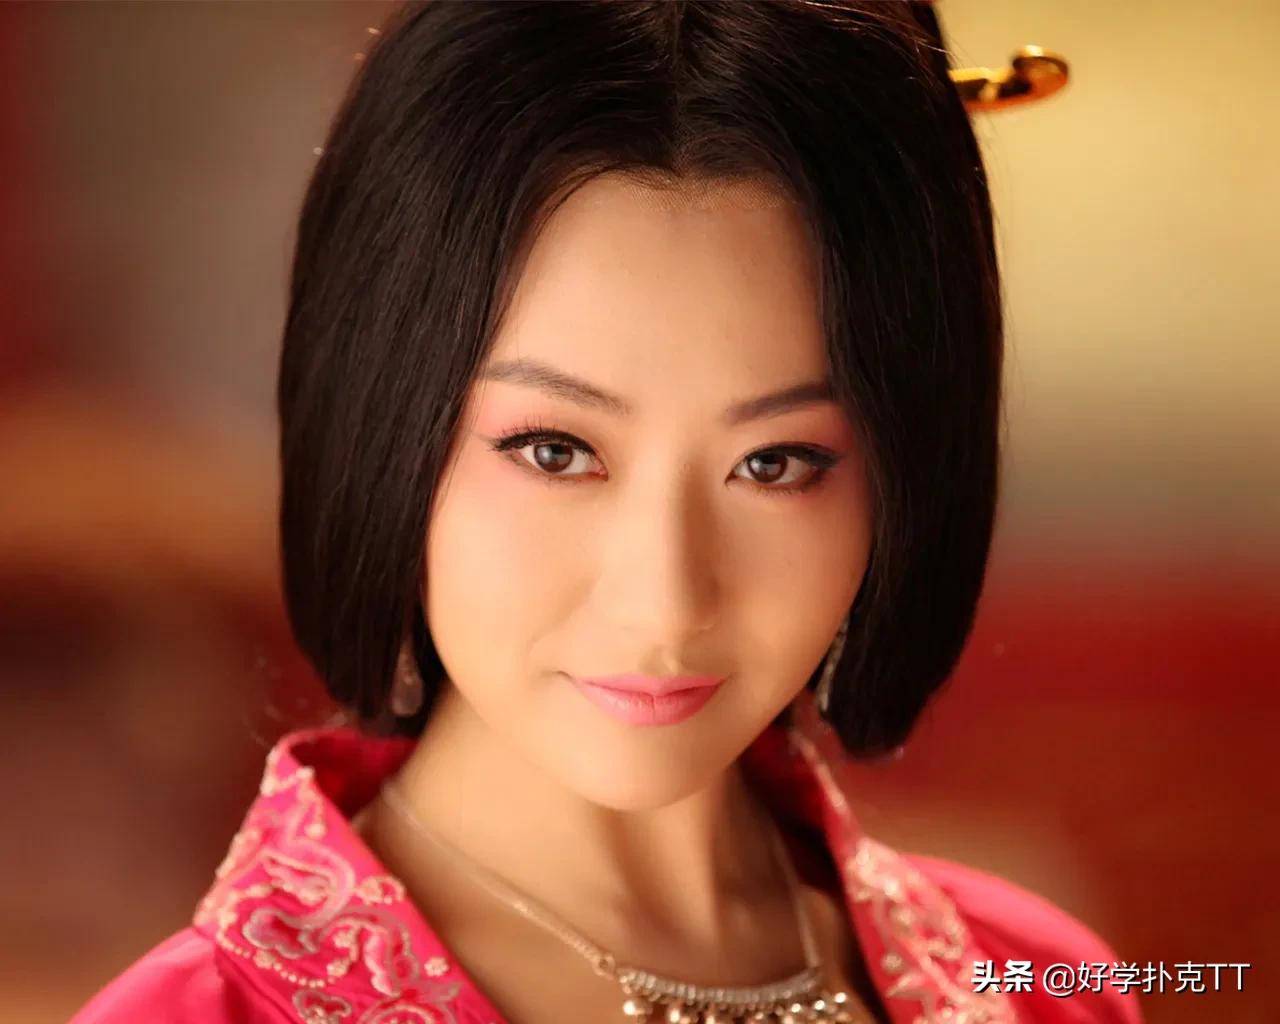 原创古装剧里装扮最动人心魄的十大女演员刘诗诗只能排第十